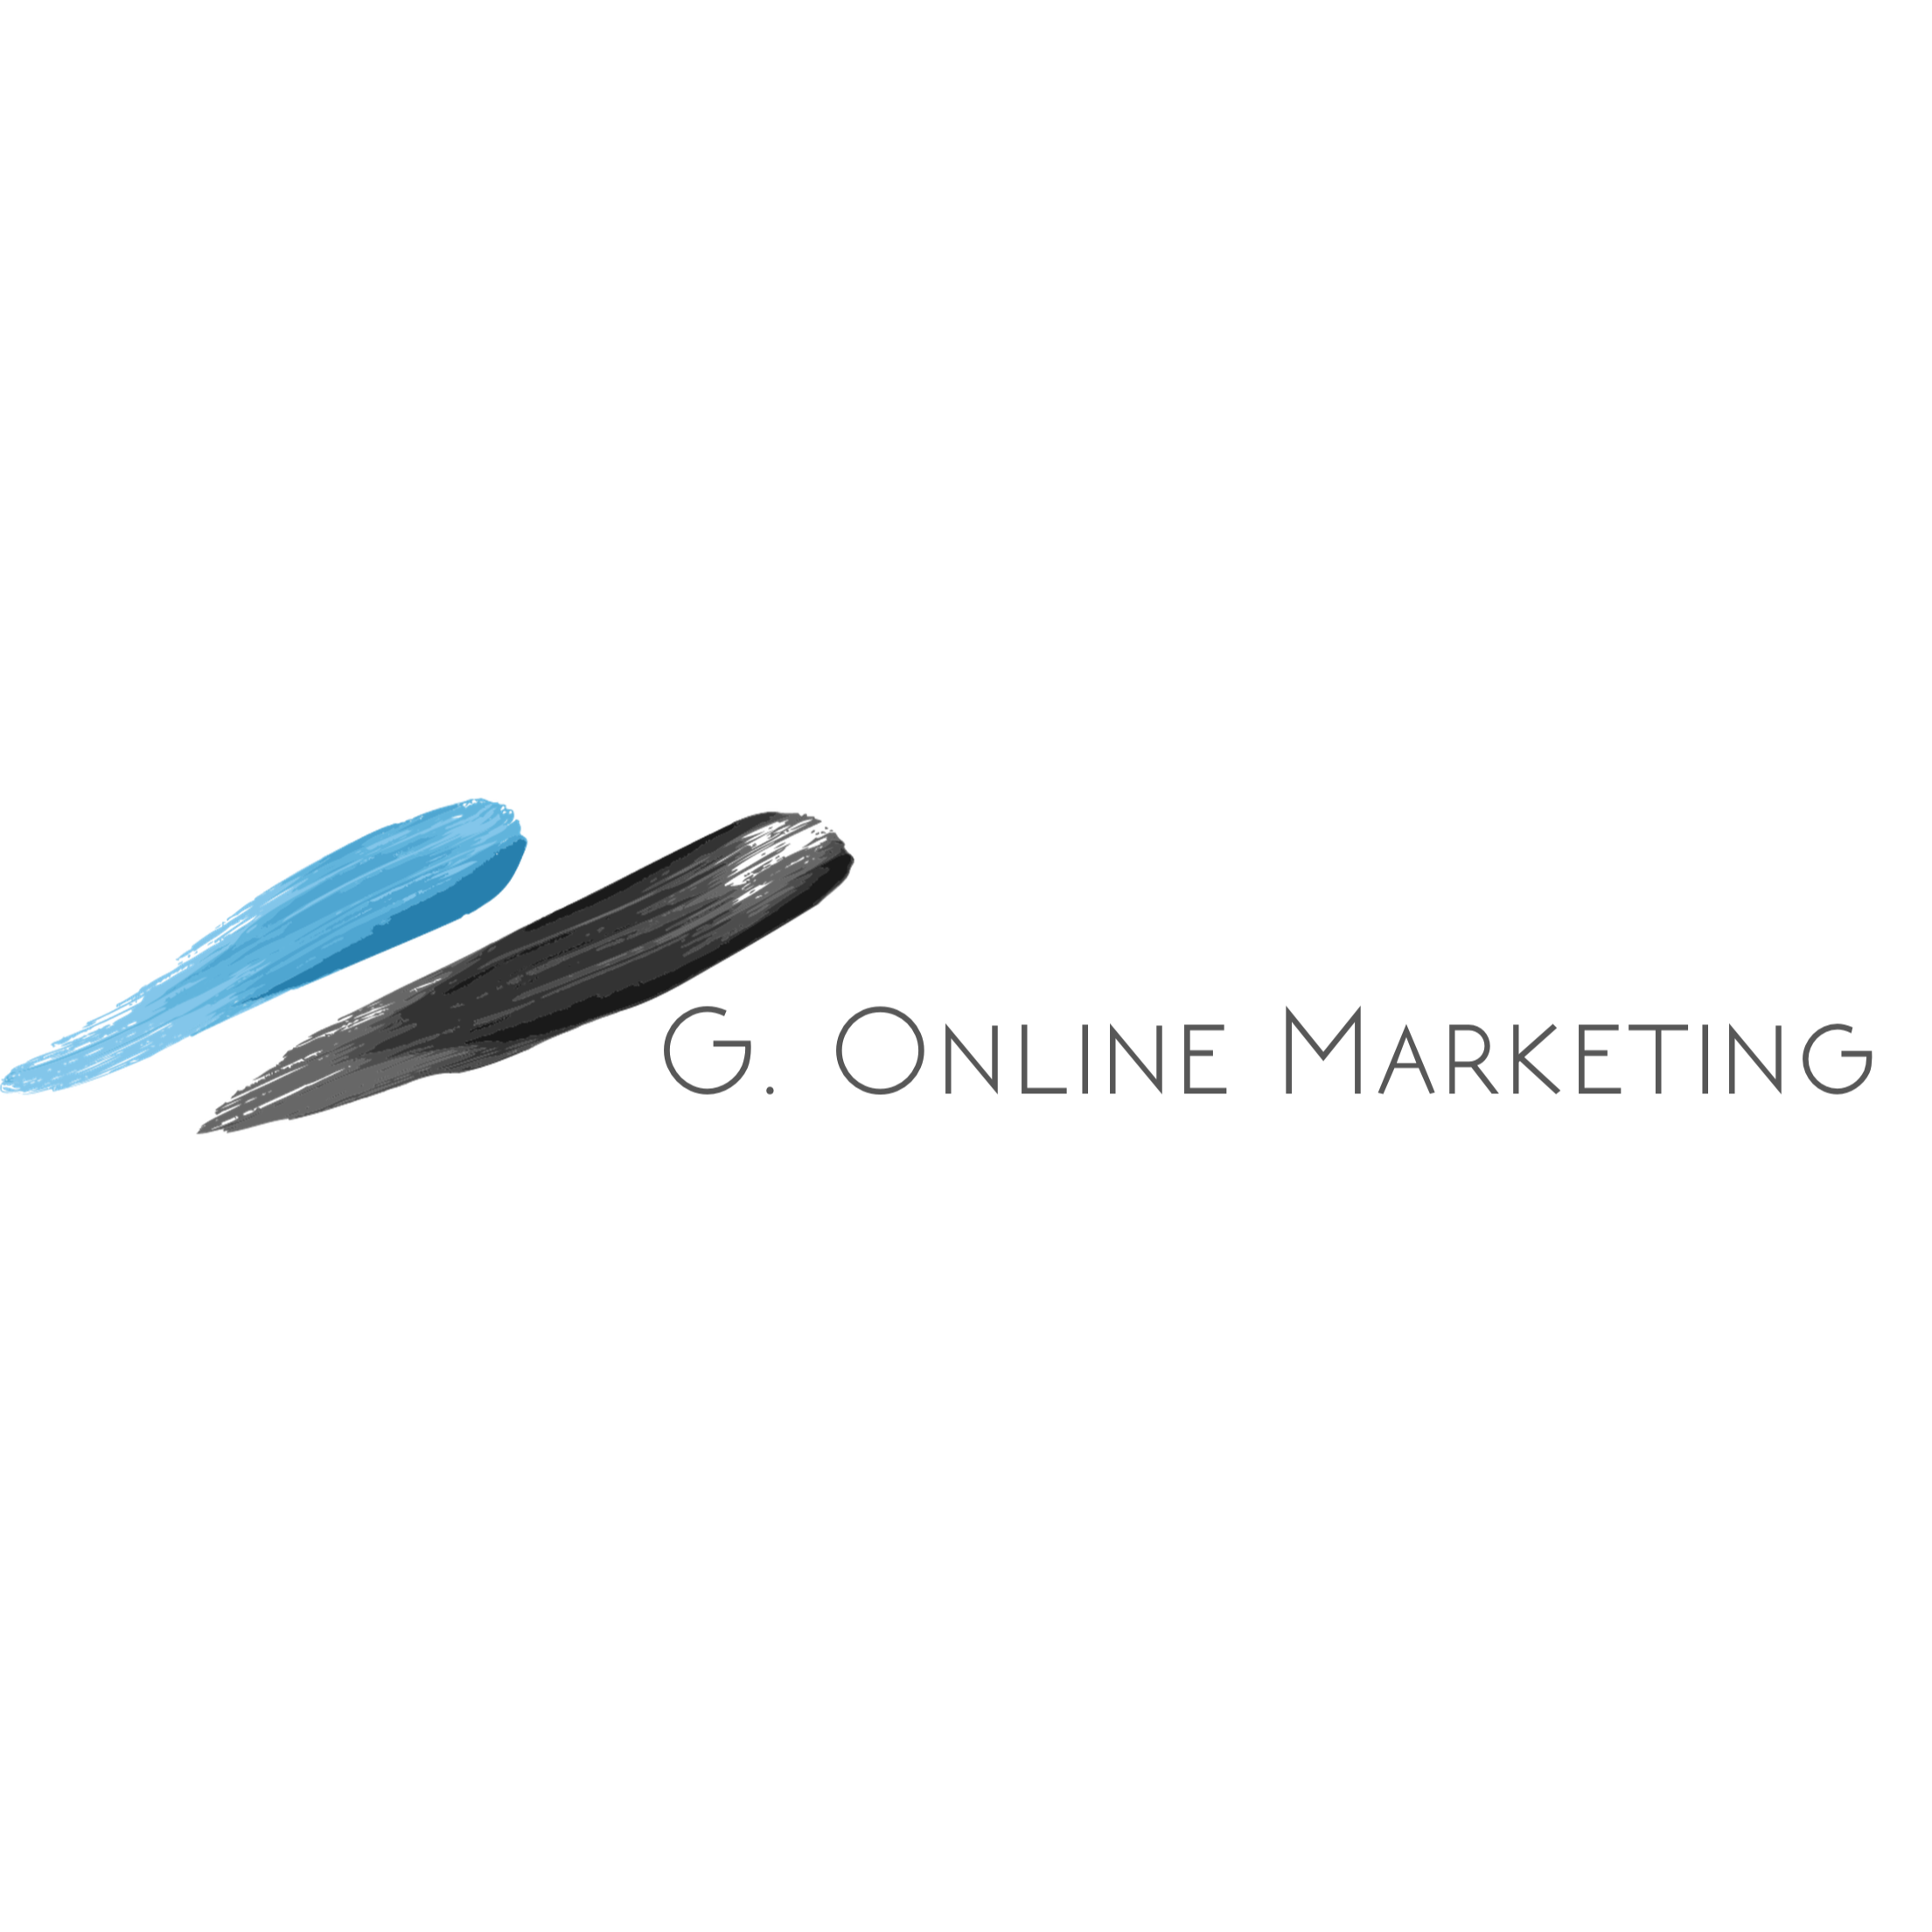 G. Online Marketing in Berlin